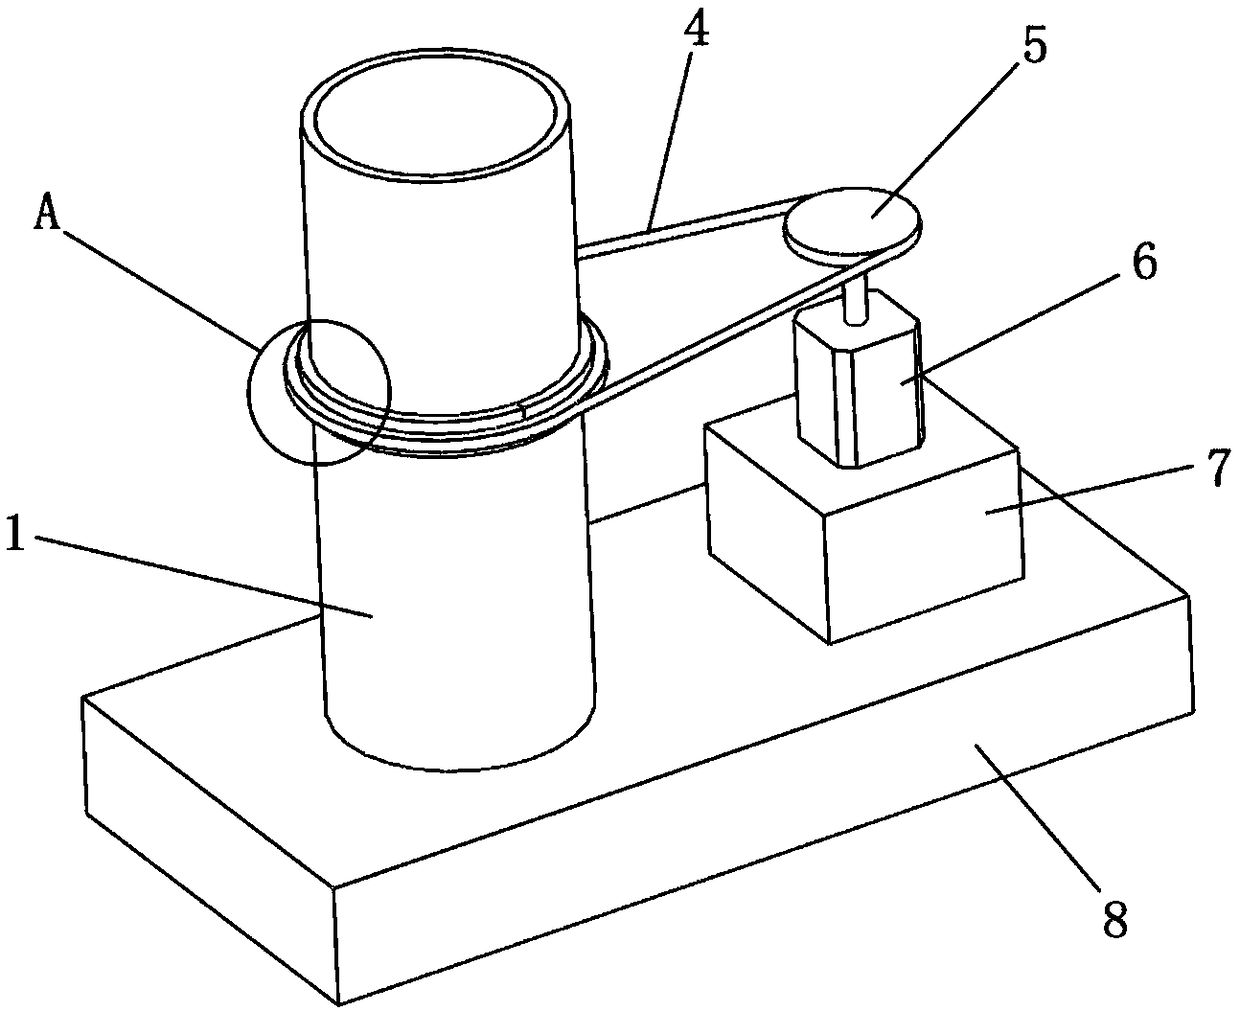 Laminar flow stirring device and stirring method